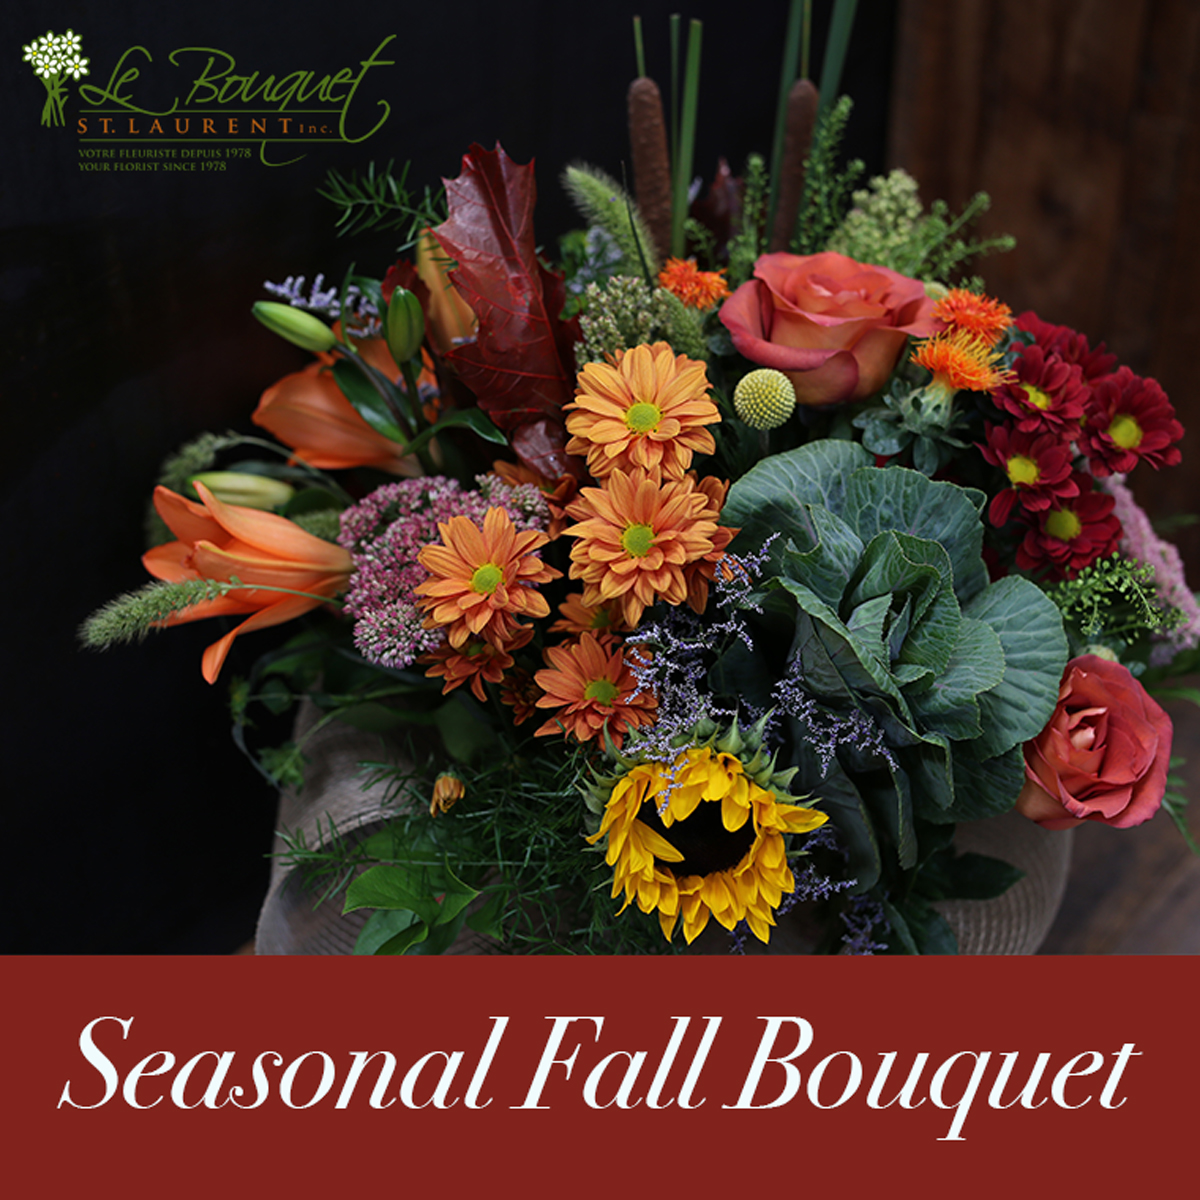 le-bouquet-st-laurent-seasonal-fall-bouquet